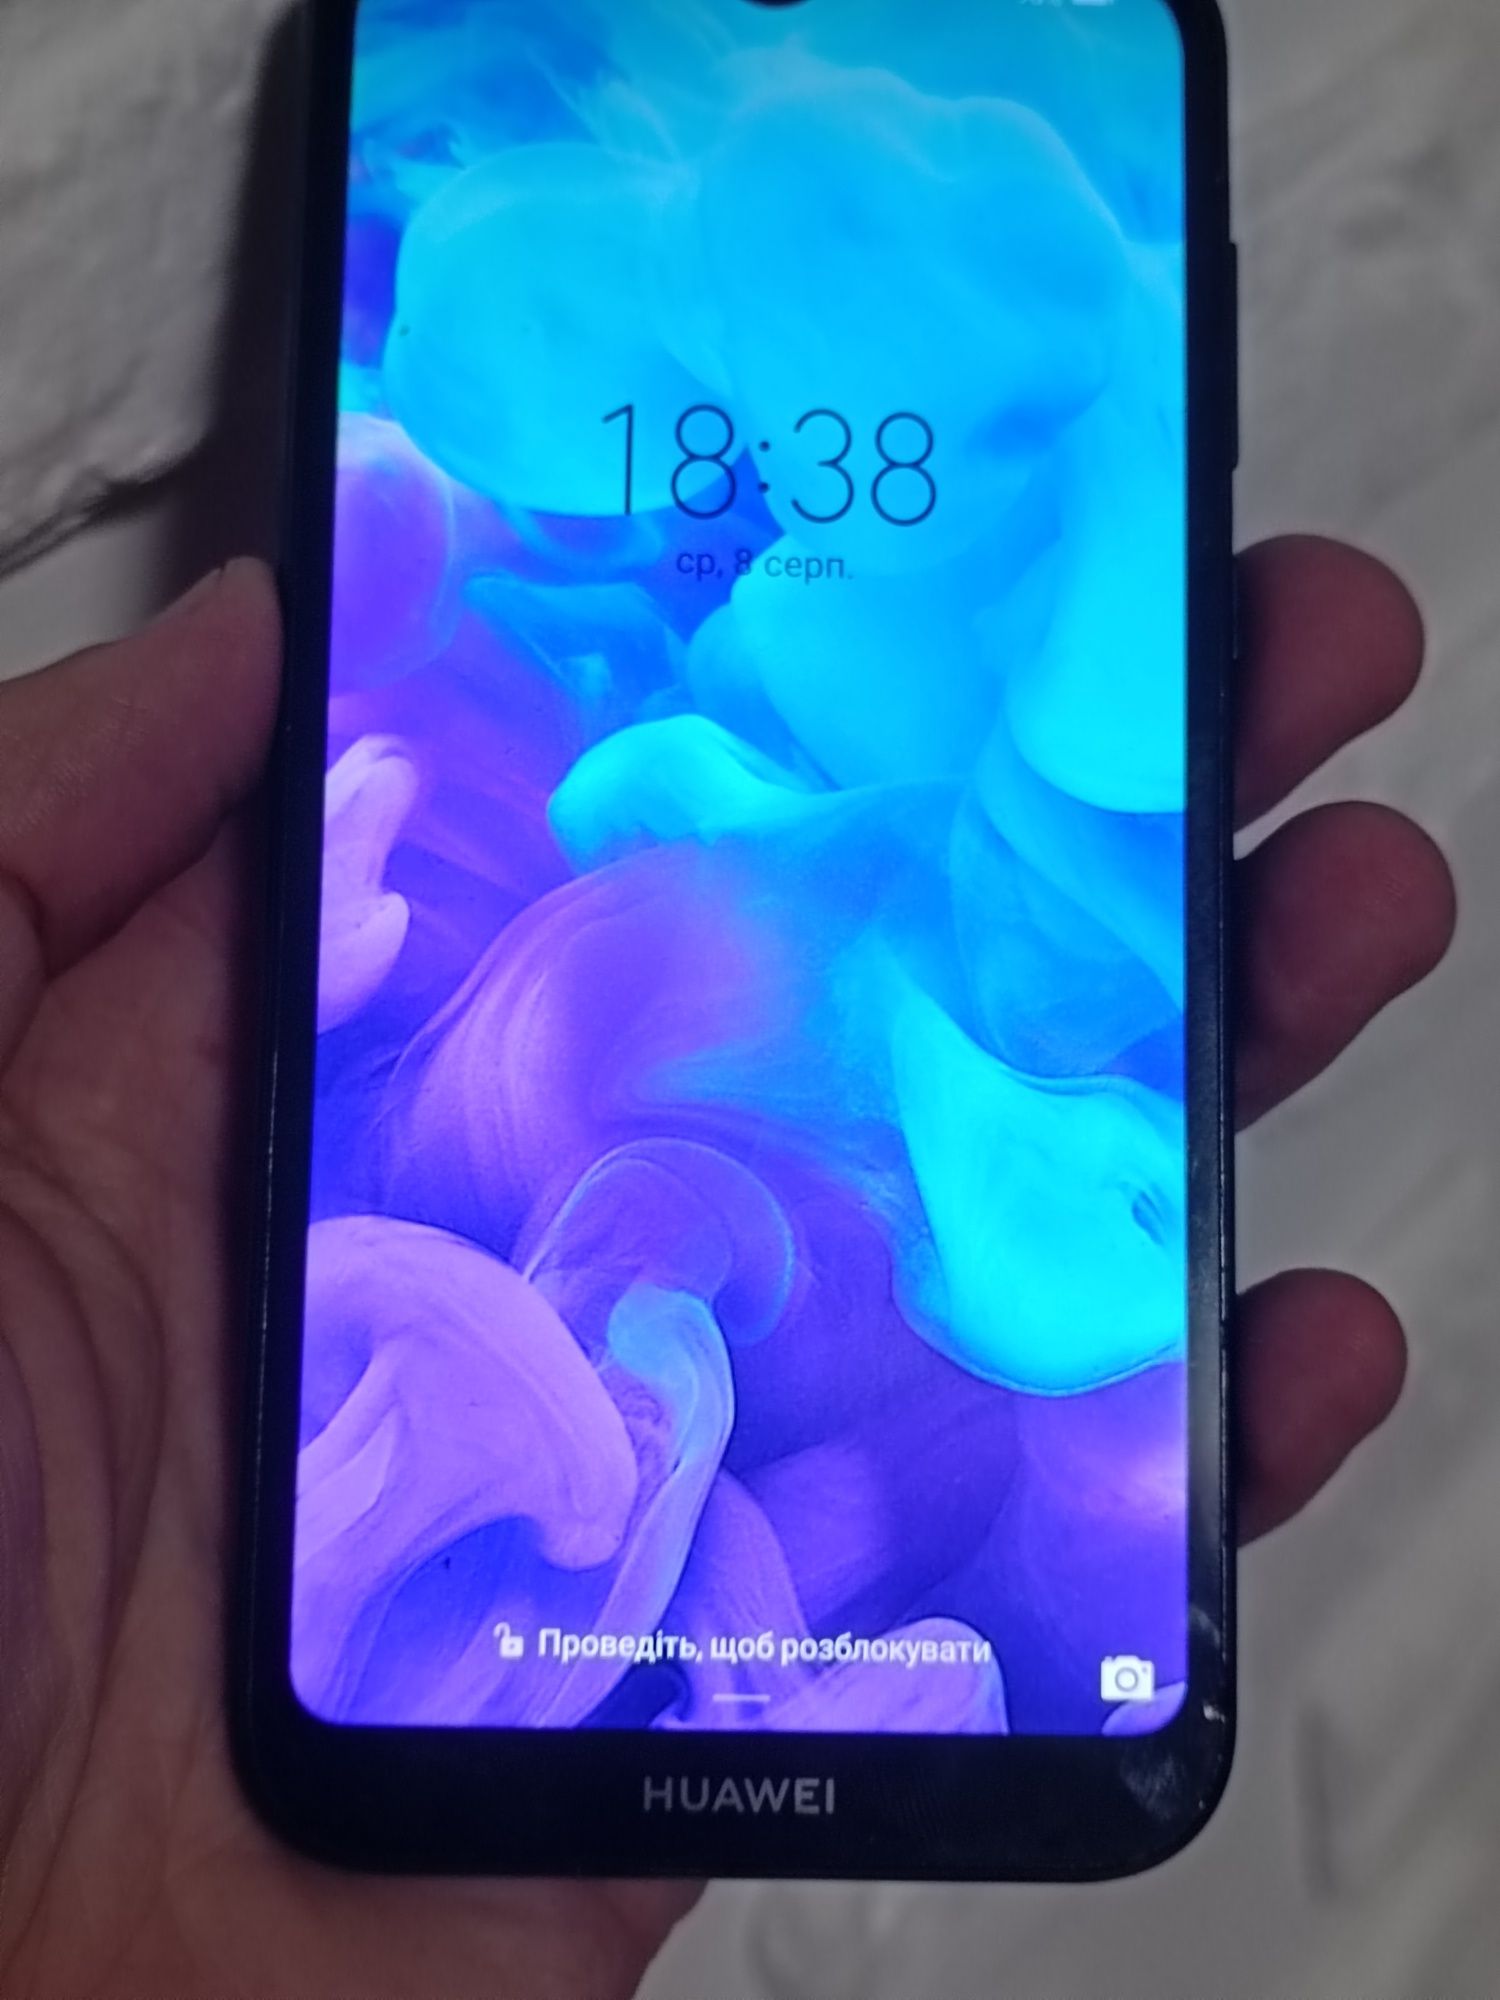 Huawei Y5 2019 (AMN-LX9)